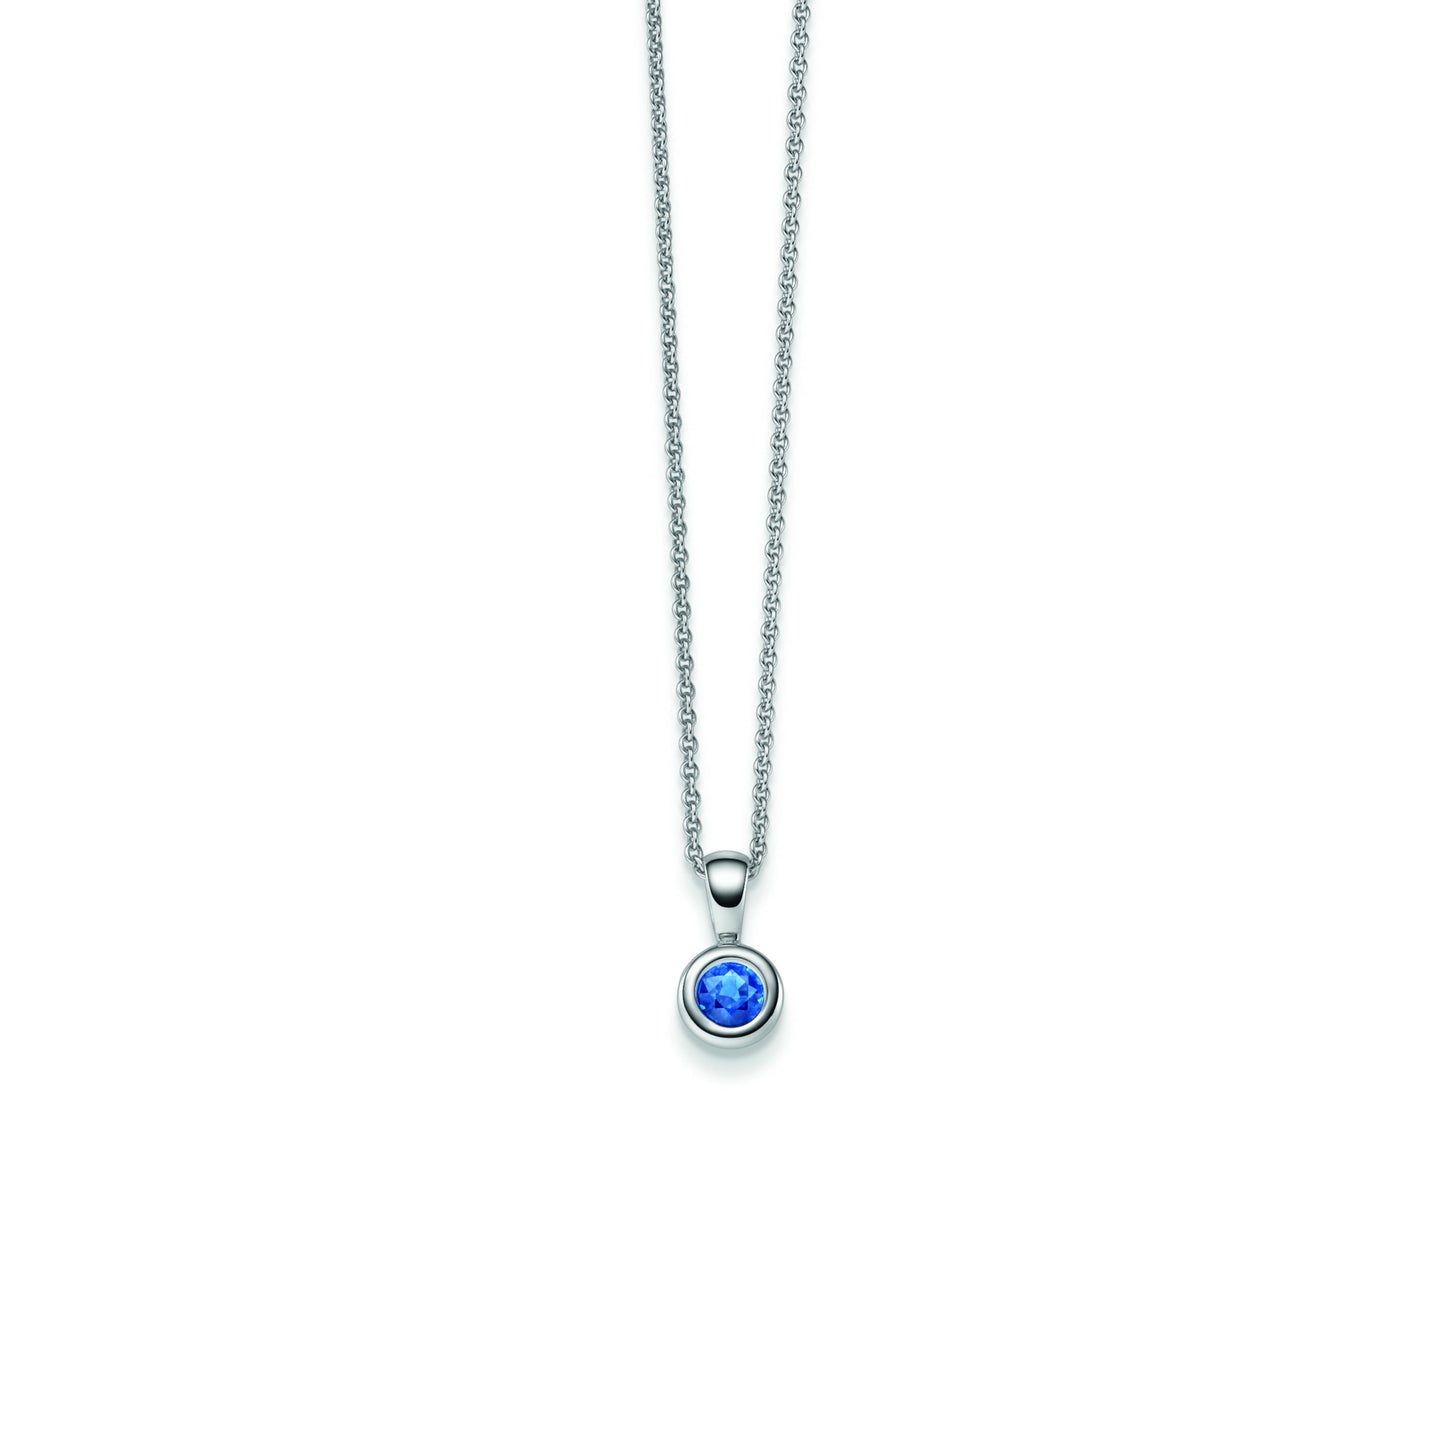 WILHELM MÜLLER - Halskette mit blauem Saphir Anhänger